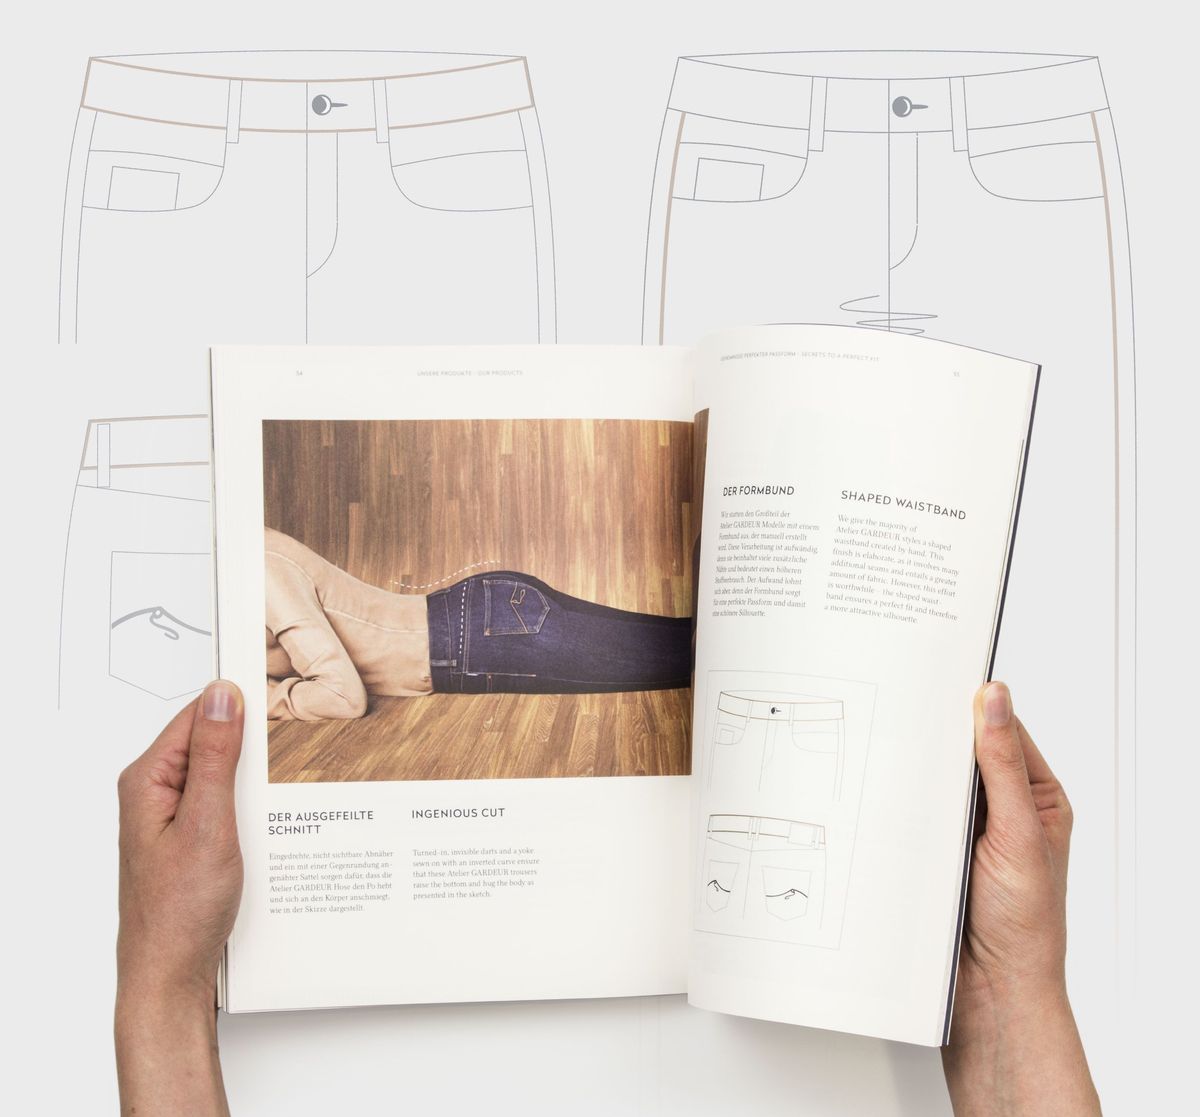 Aufgeschlagene Brandbook-Doppelseite vor dem Hintergrund illustrierter Hosen